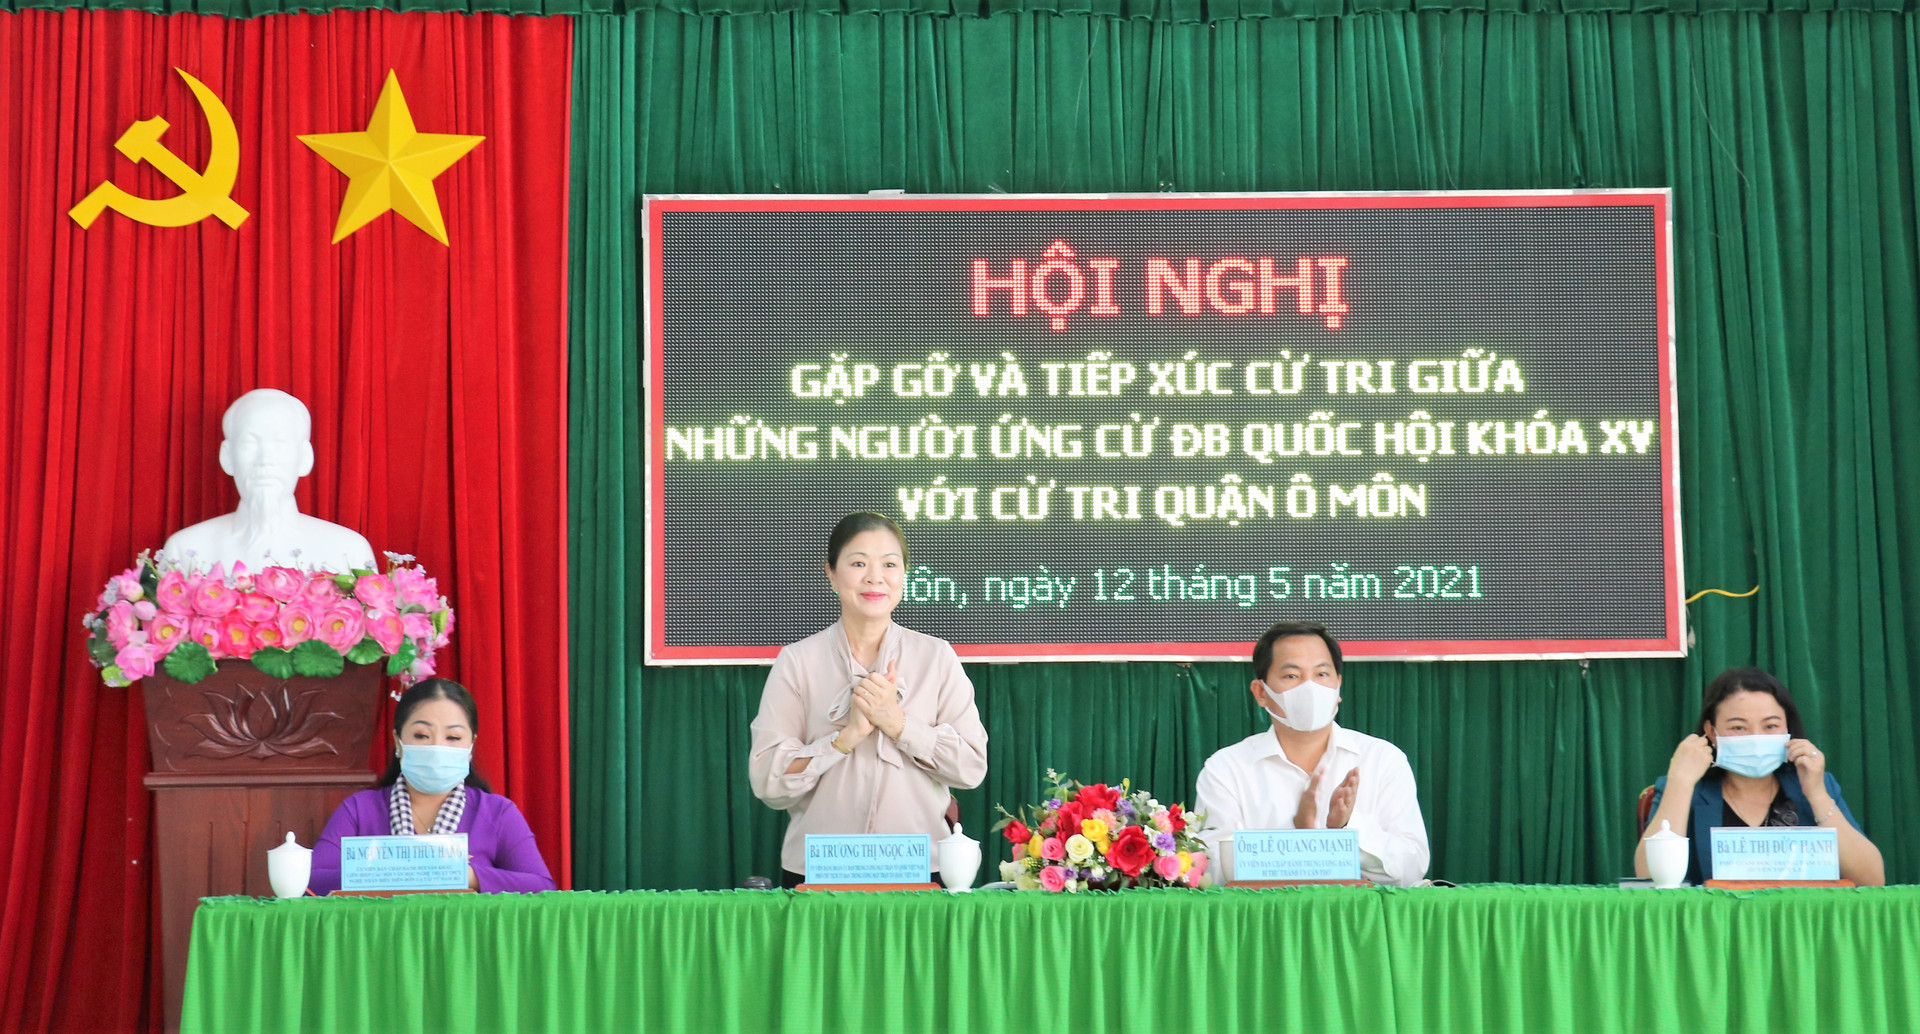 Bà Trương Thị Ngọc Ánh, Chủ tịch UBTƯ MTTQ Việt Nam tại buổi gặp gỡ và tiếp xúc với cử tri.